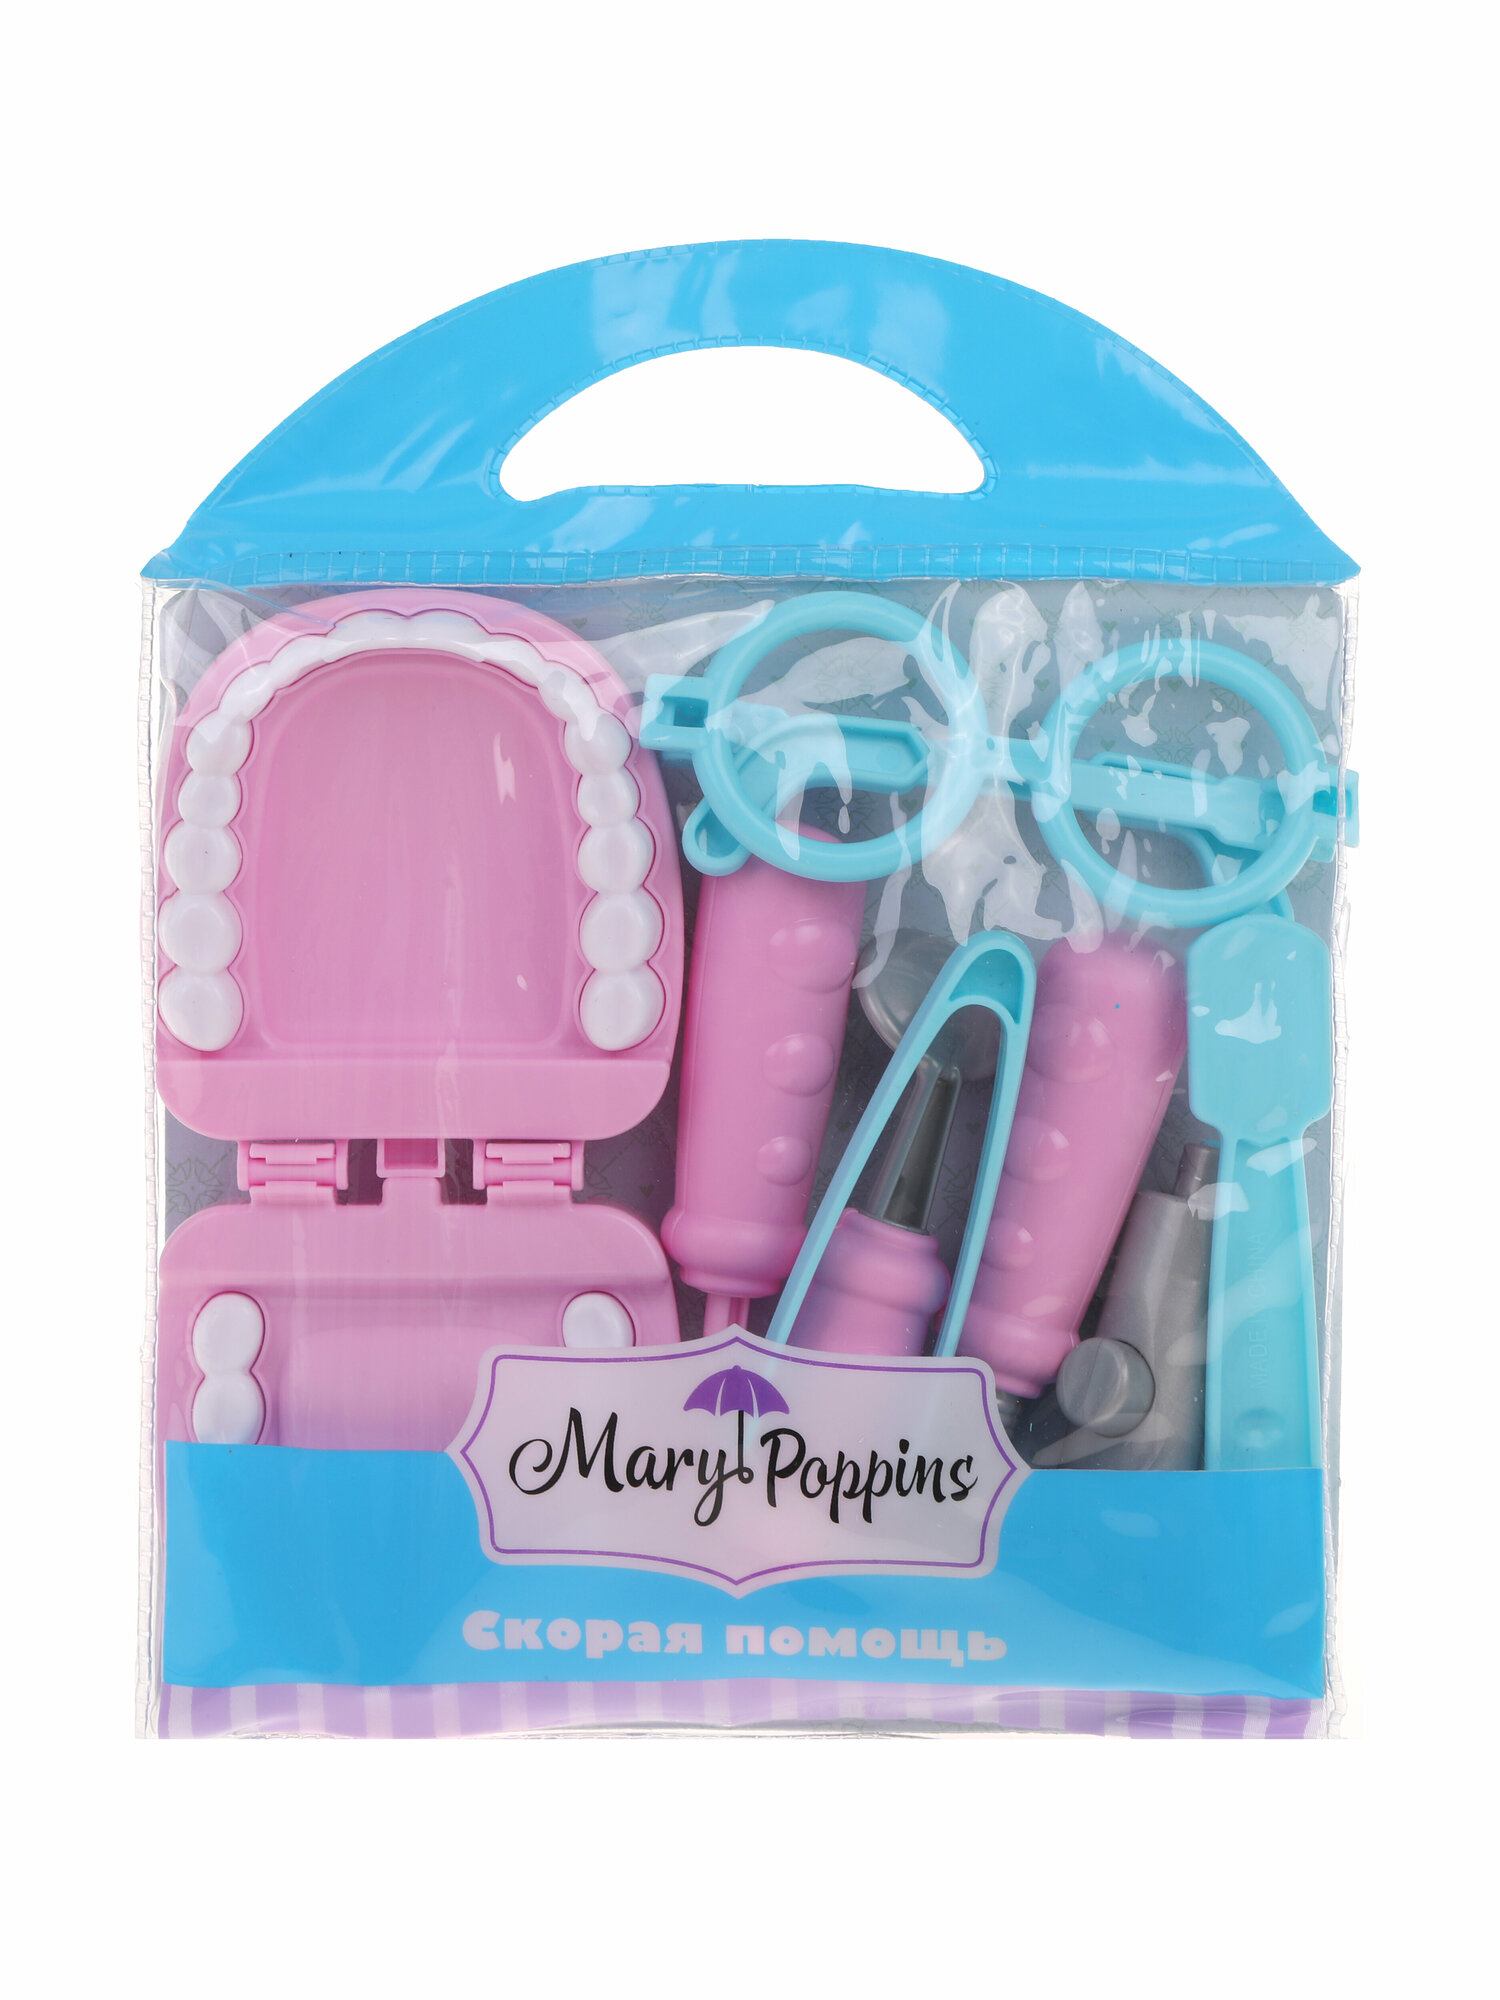 Набор стоматолога Mary Poppins Скорая помощь, 8 предметов, в пакете 453315